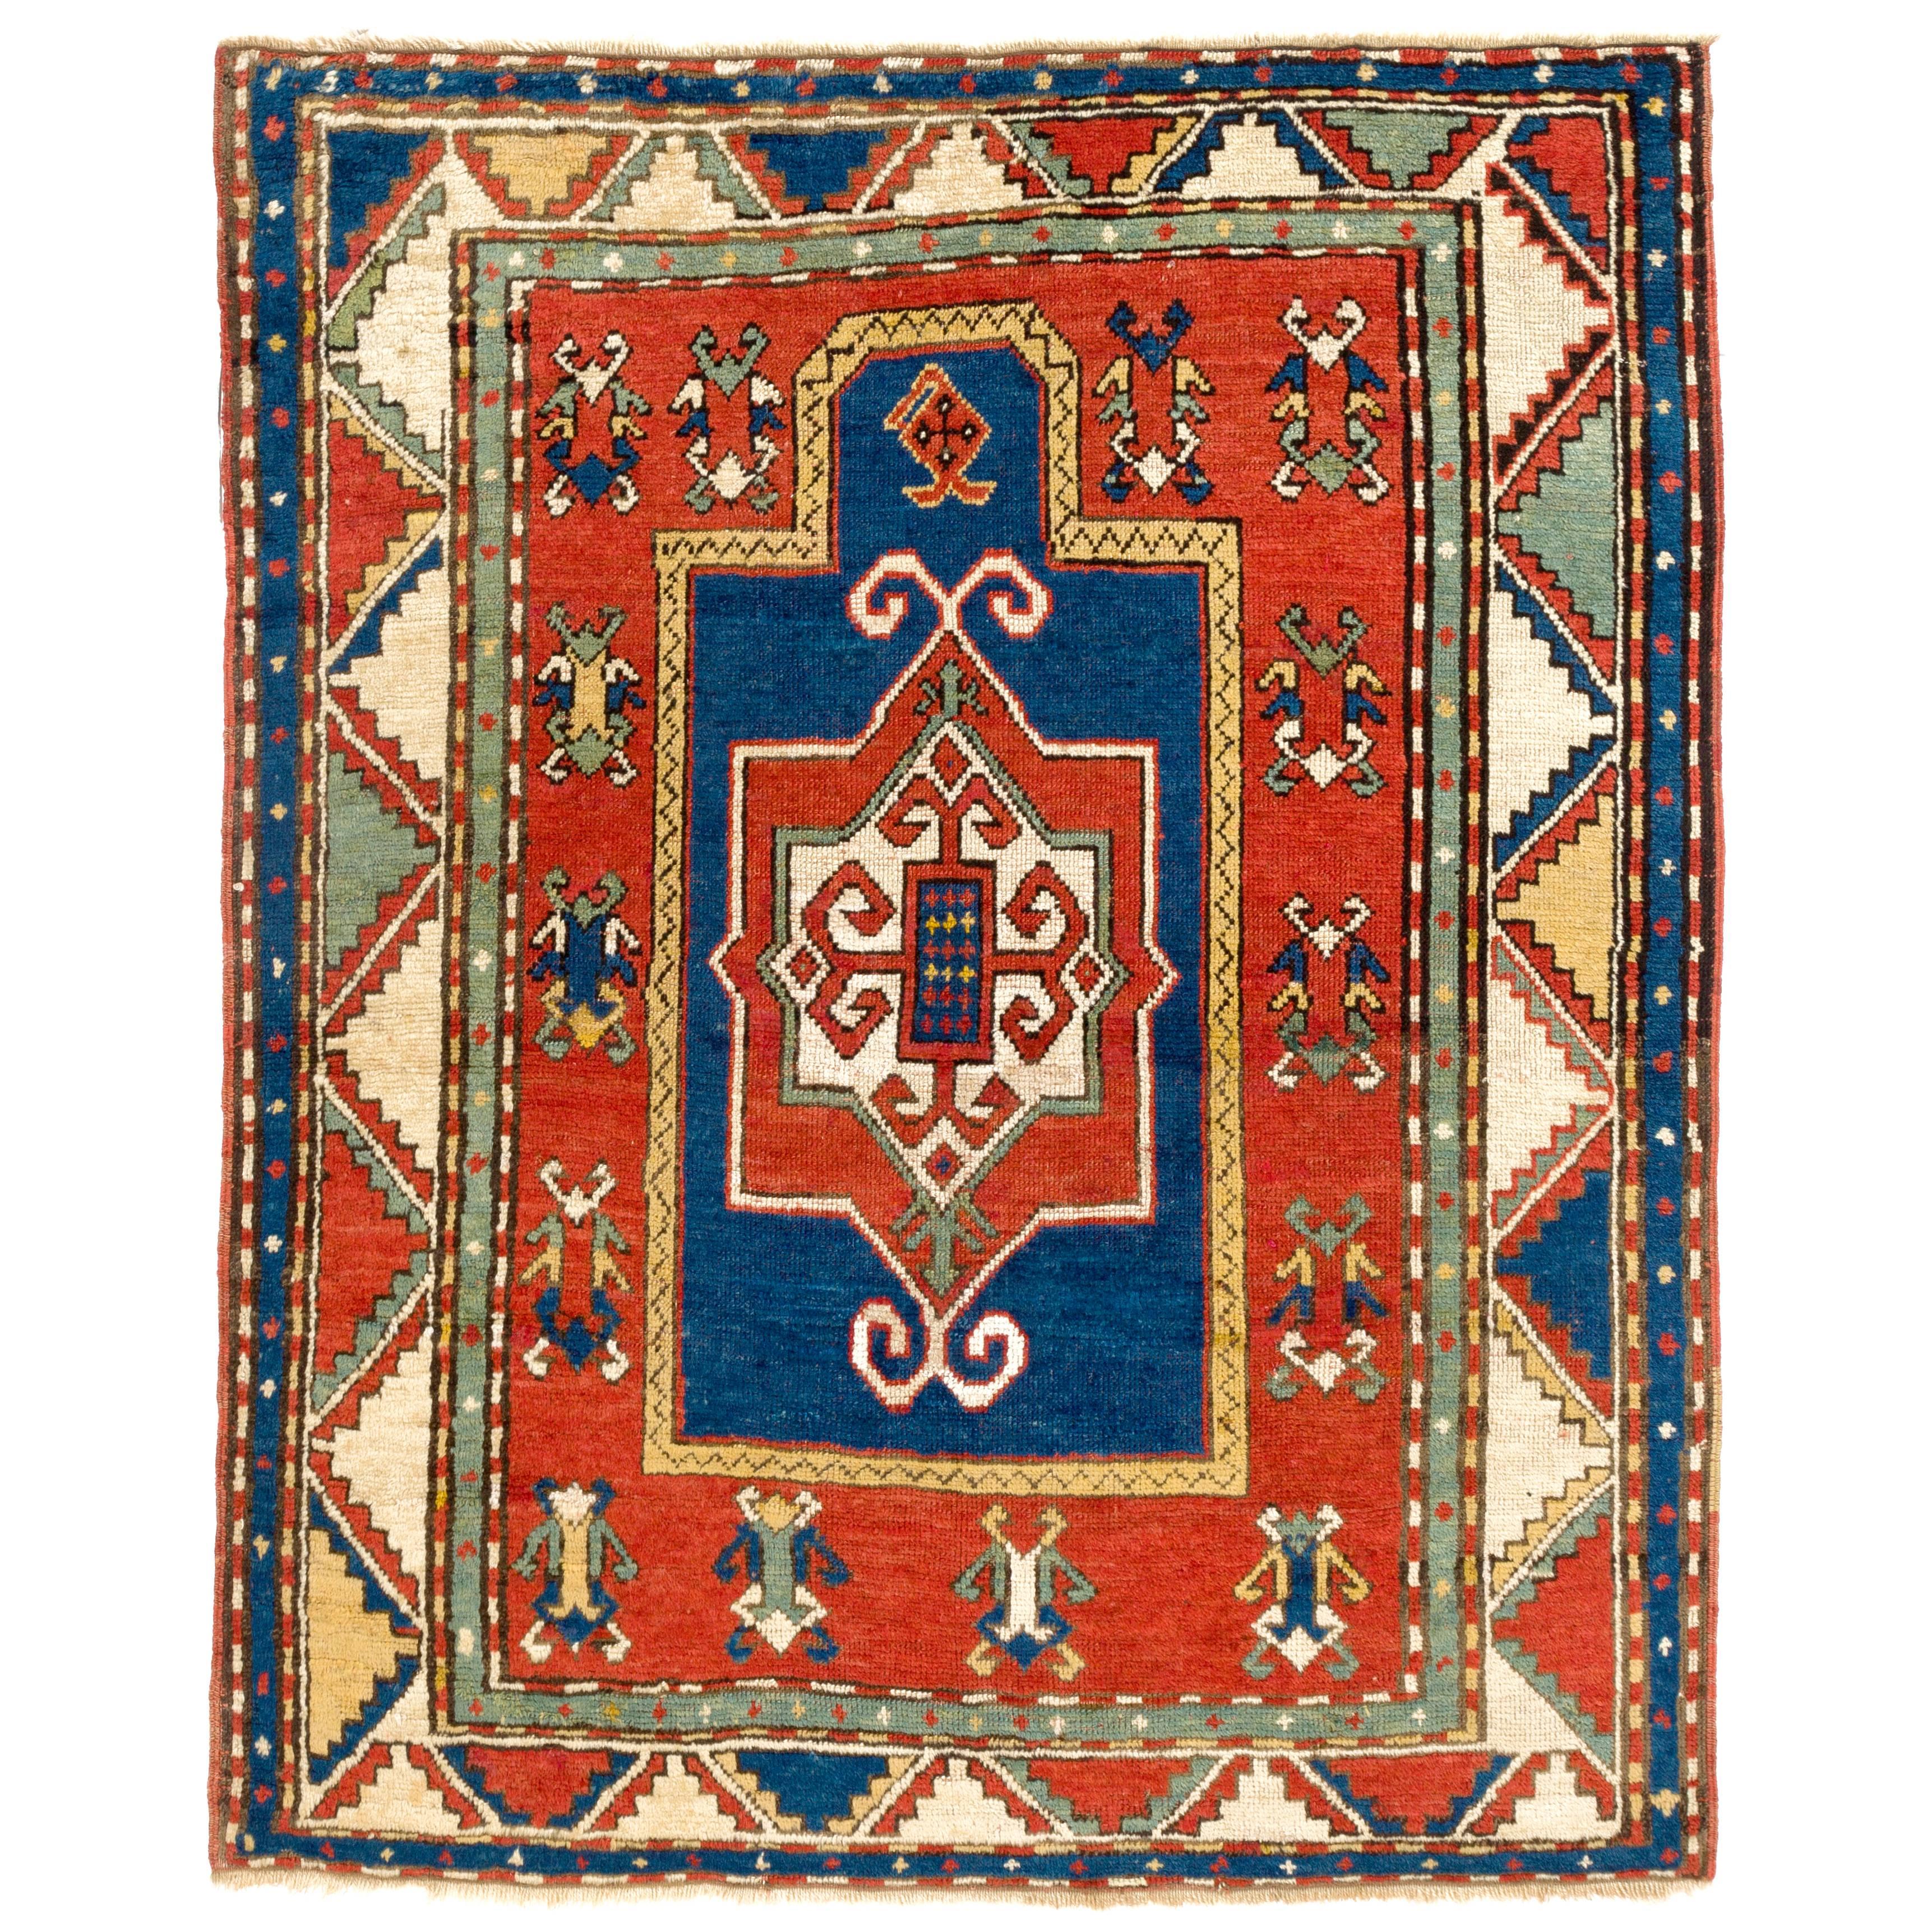 Antique Caucasian Fachralo Kazak Rug, 19th Century